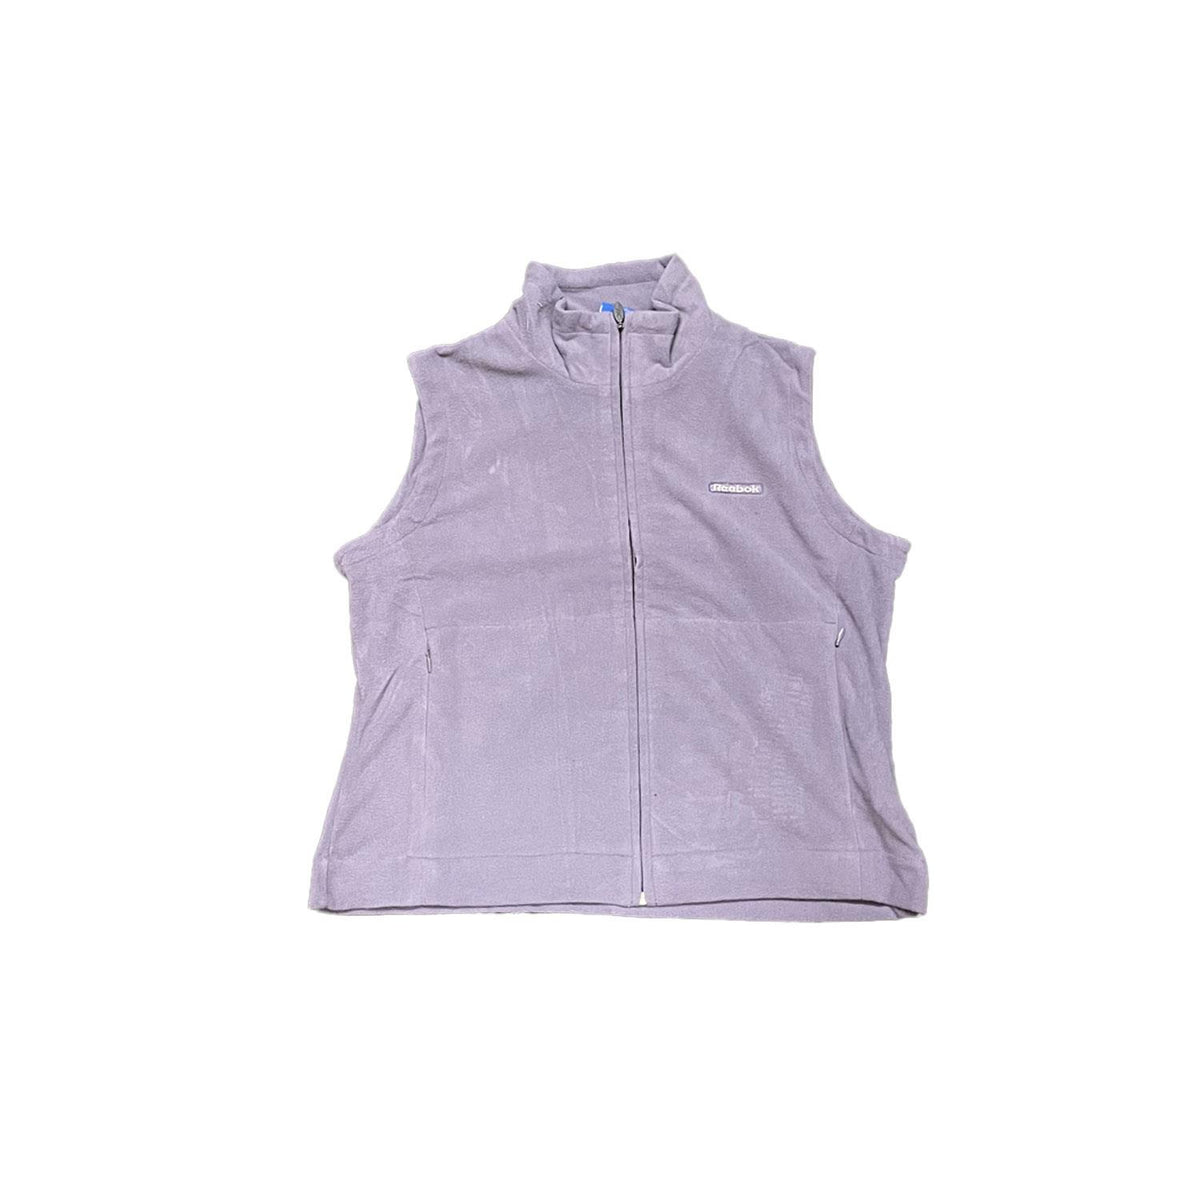 Reebok Original Women's Fleece Feel Sport Gilet - Purple - UK Size 12